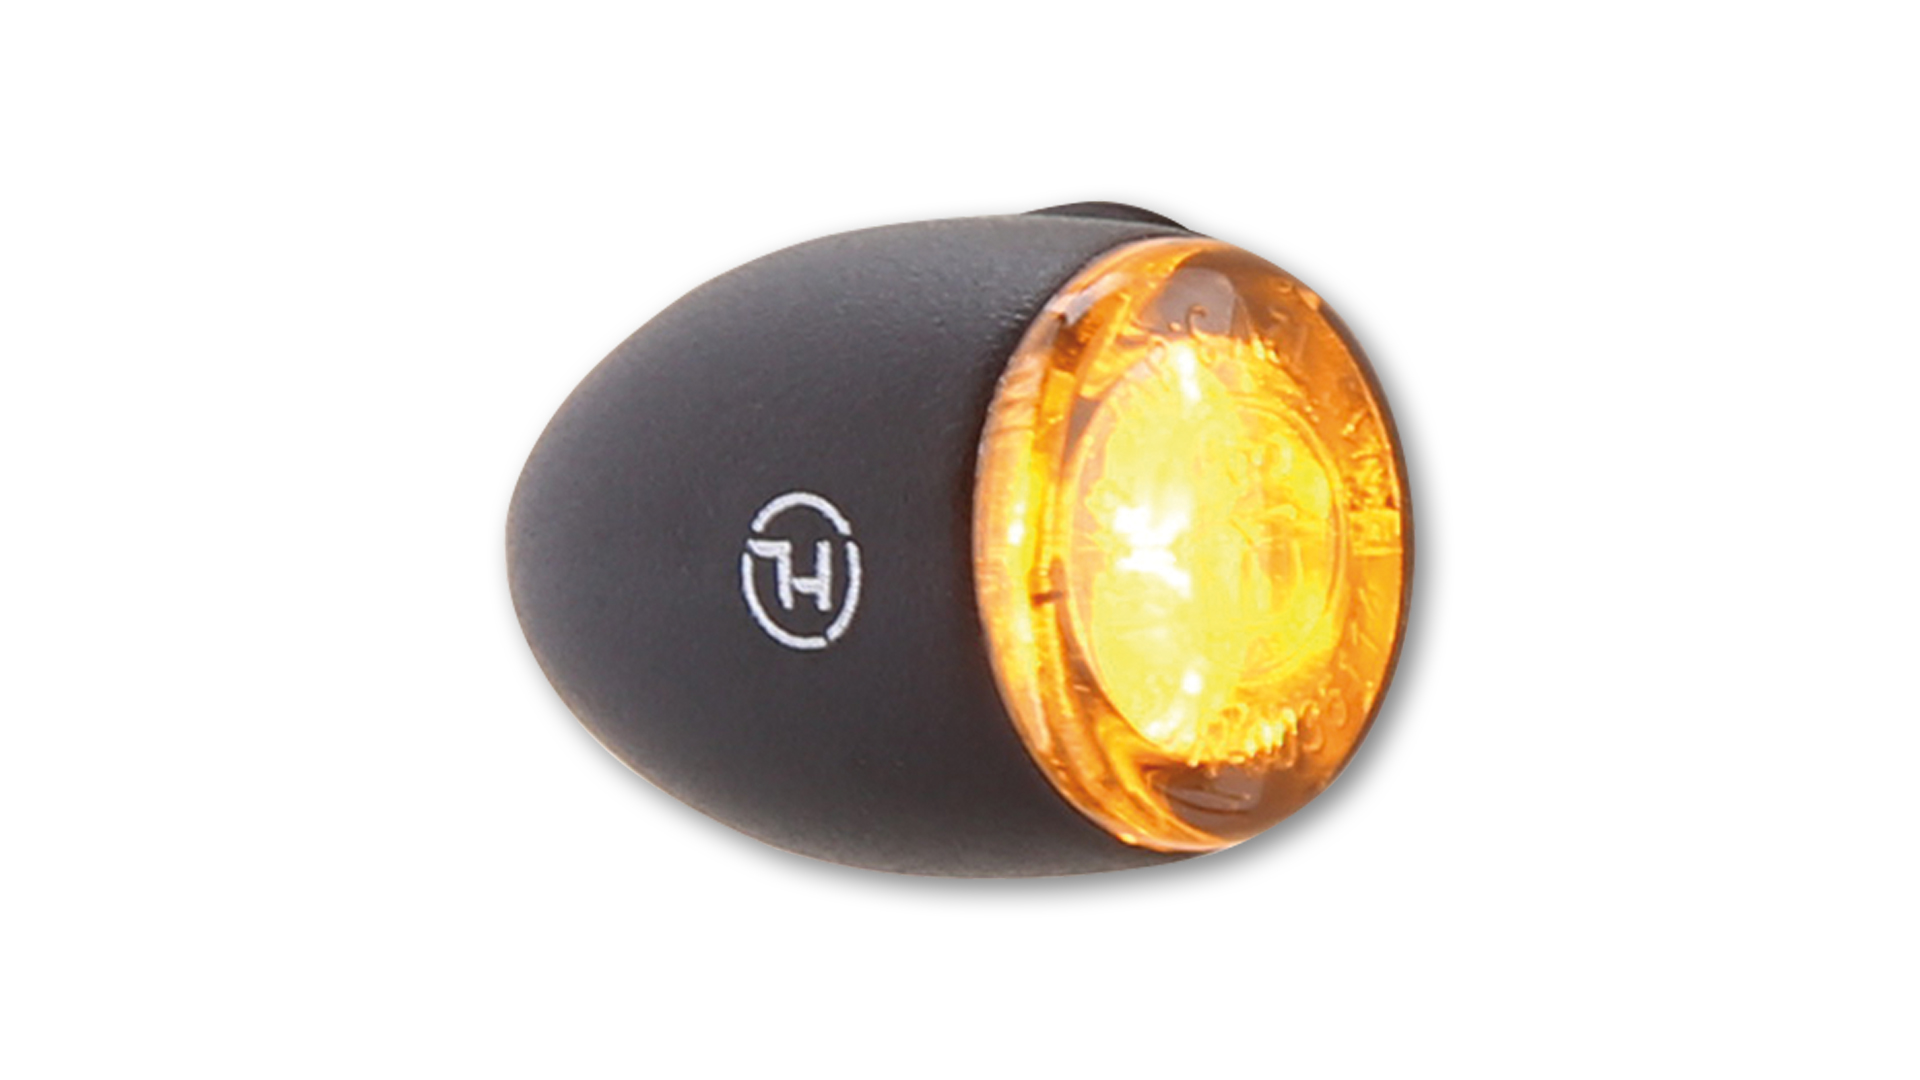 HIGHSIDER PROTON TWO LED Blinker, getöntes Glas, für vorne und hinten geeignet, E-geprüft, Paar.